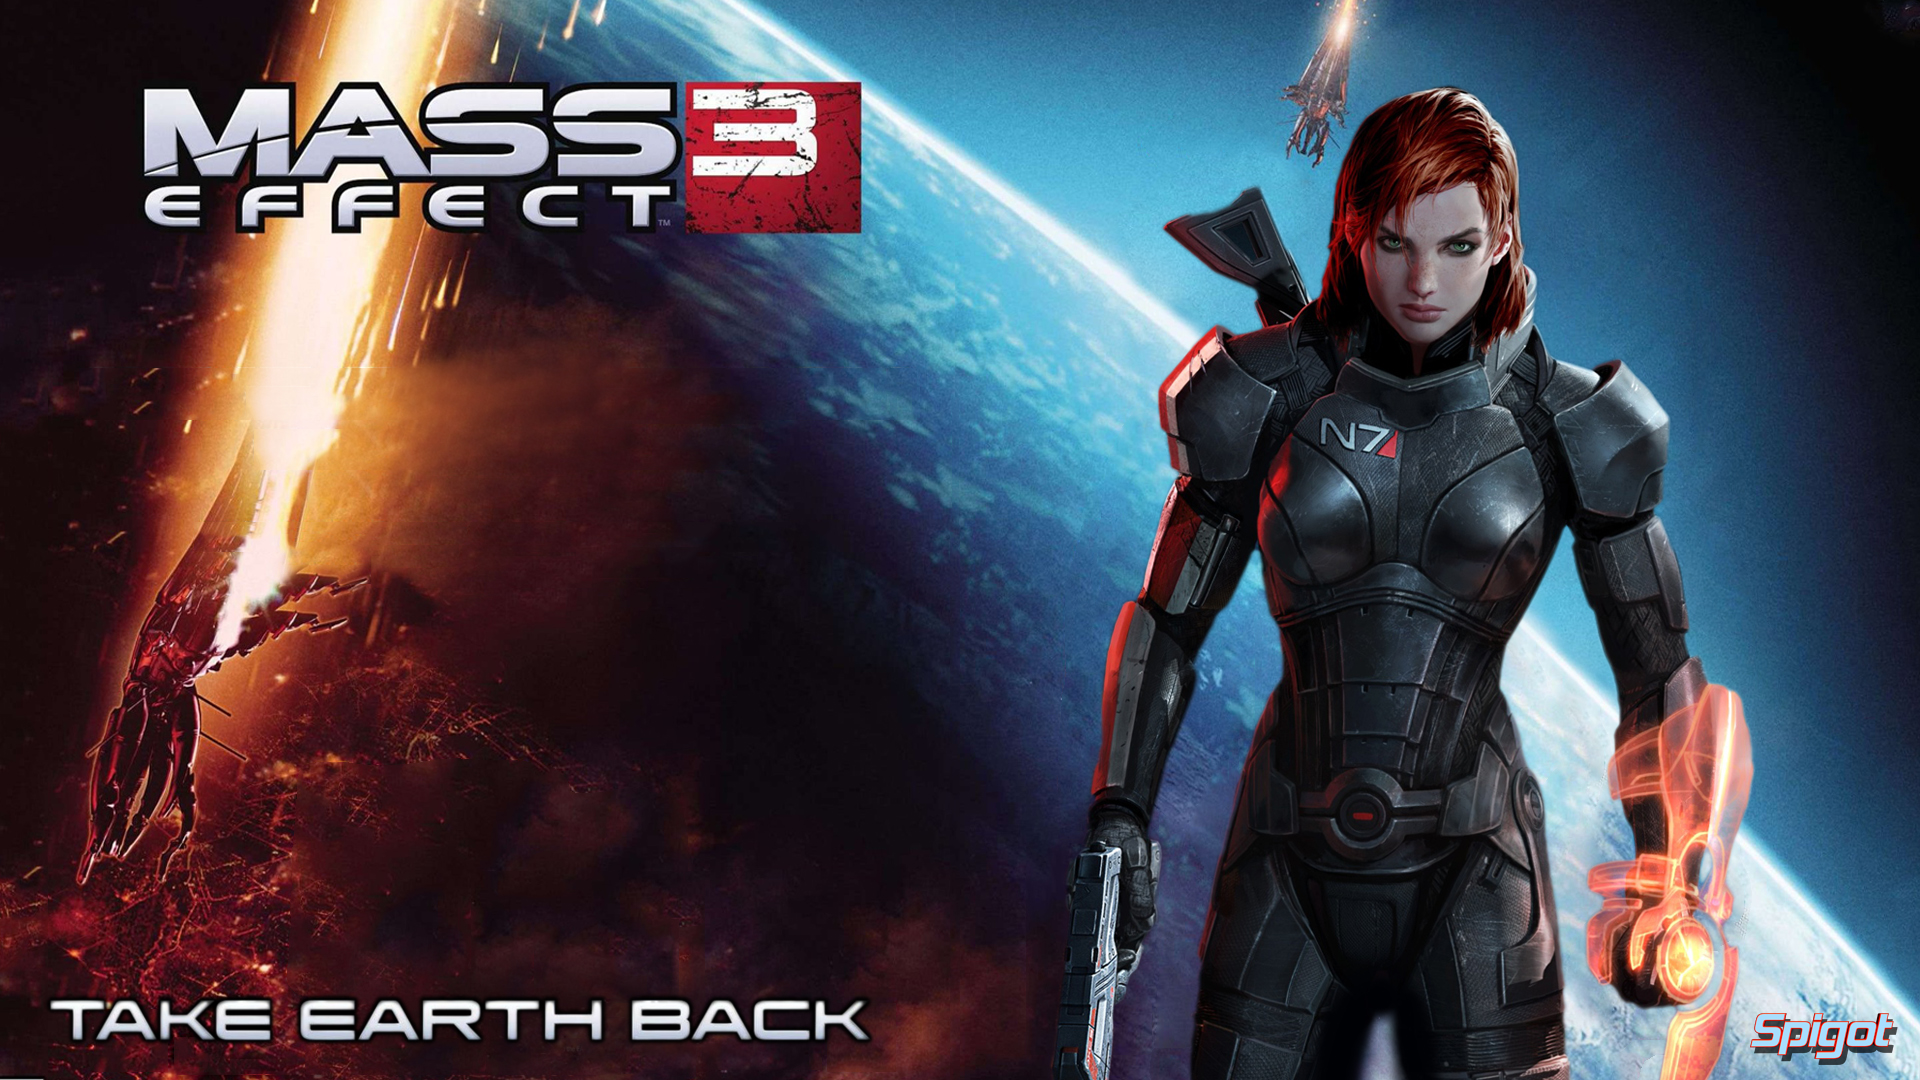 Mass Effect 3 Wallpapers | George Spigot's Blog